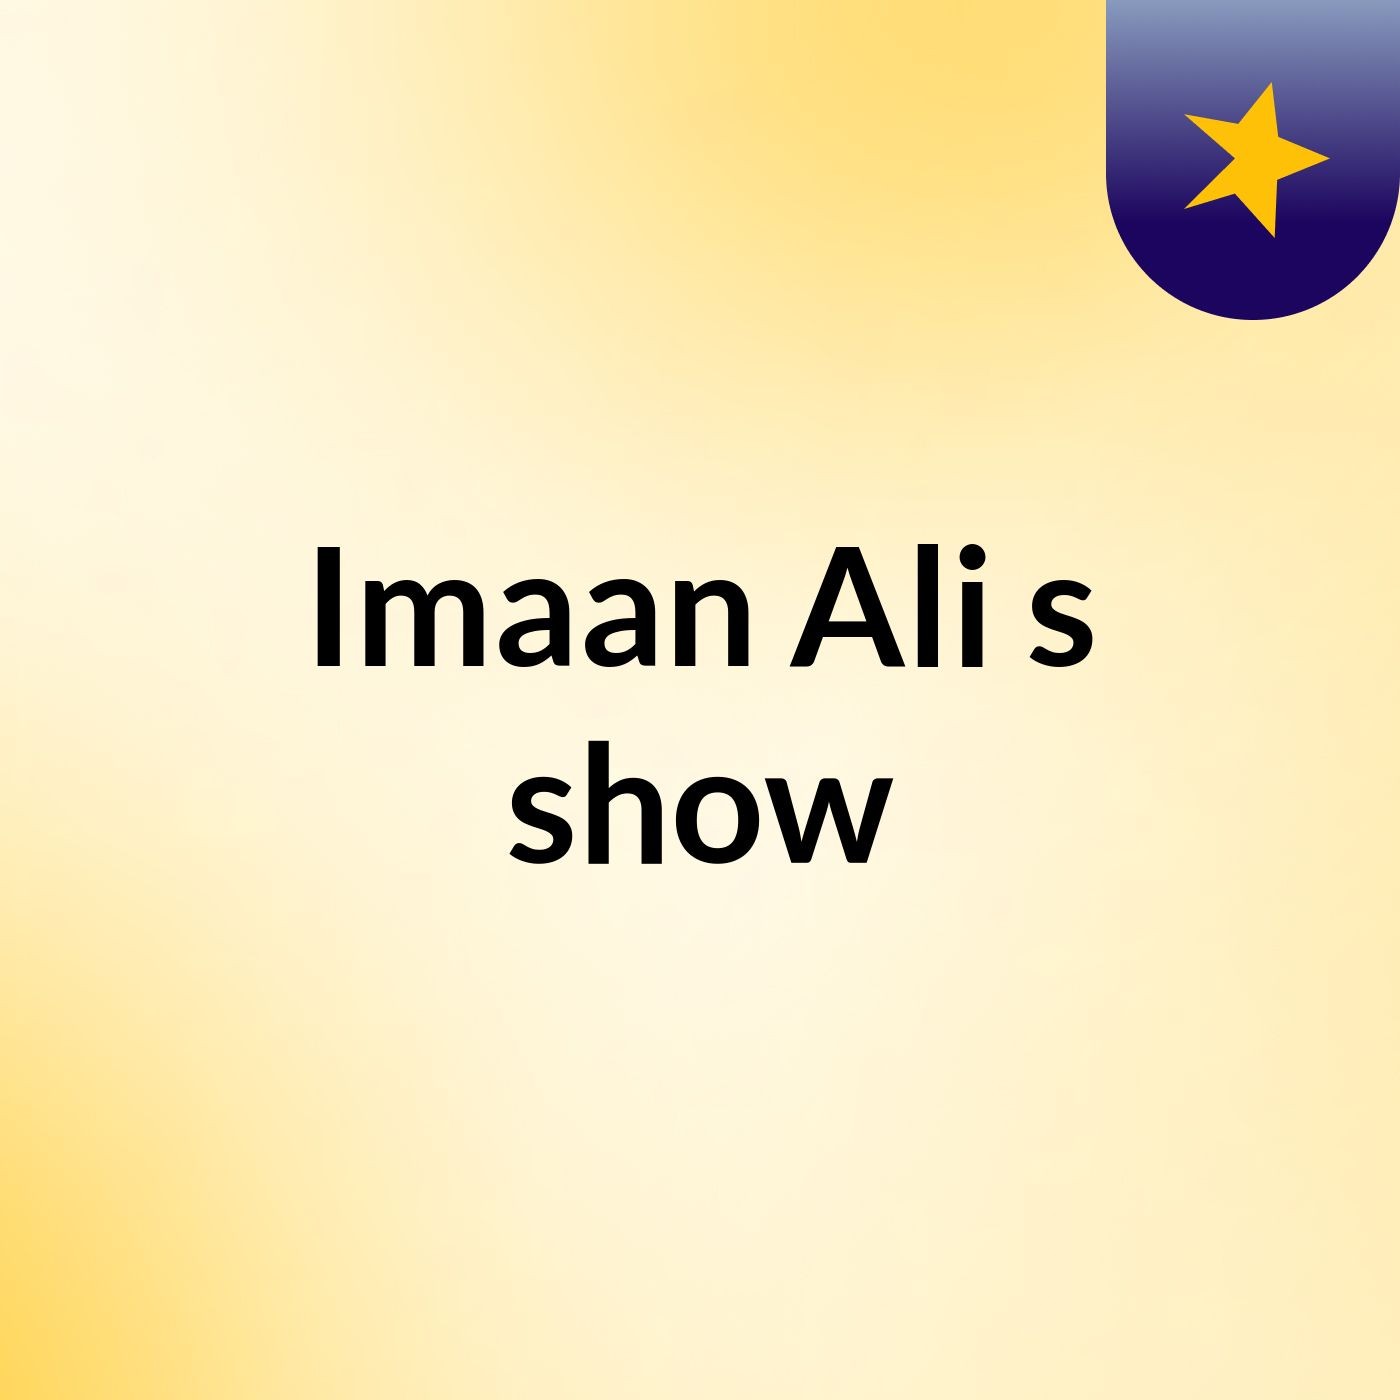 Episode 3 - Imaan Ali's show